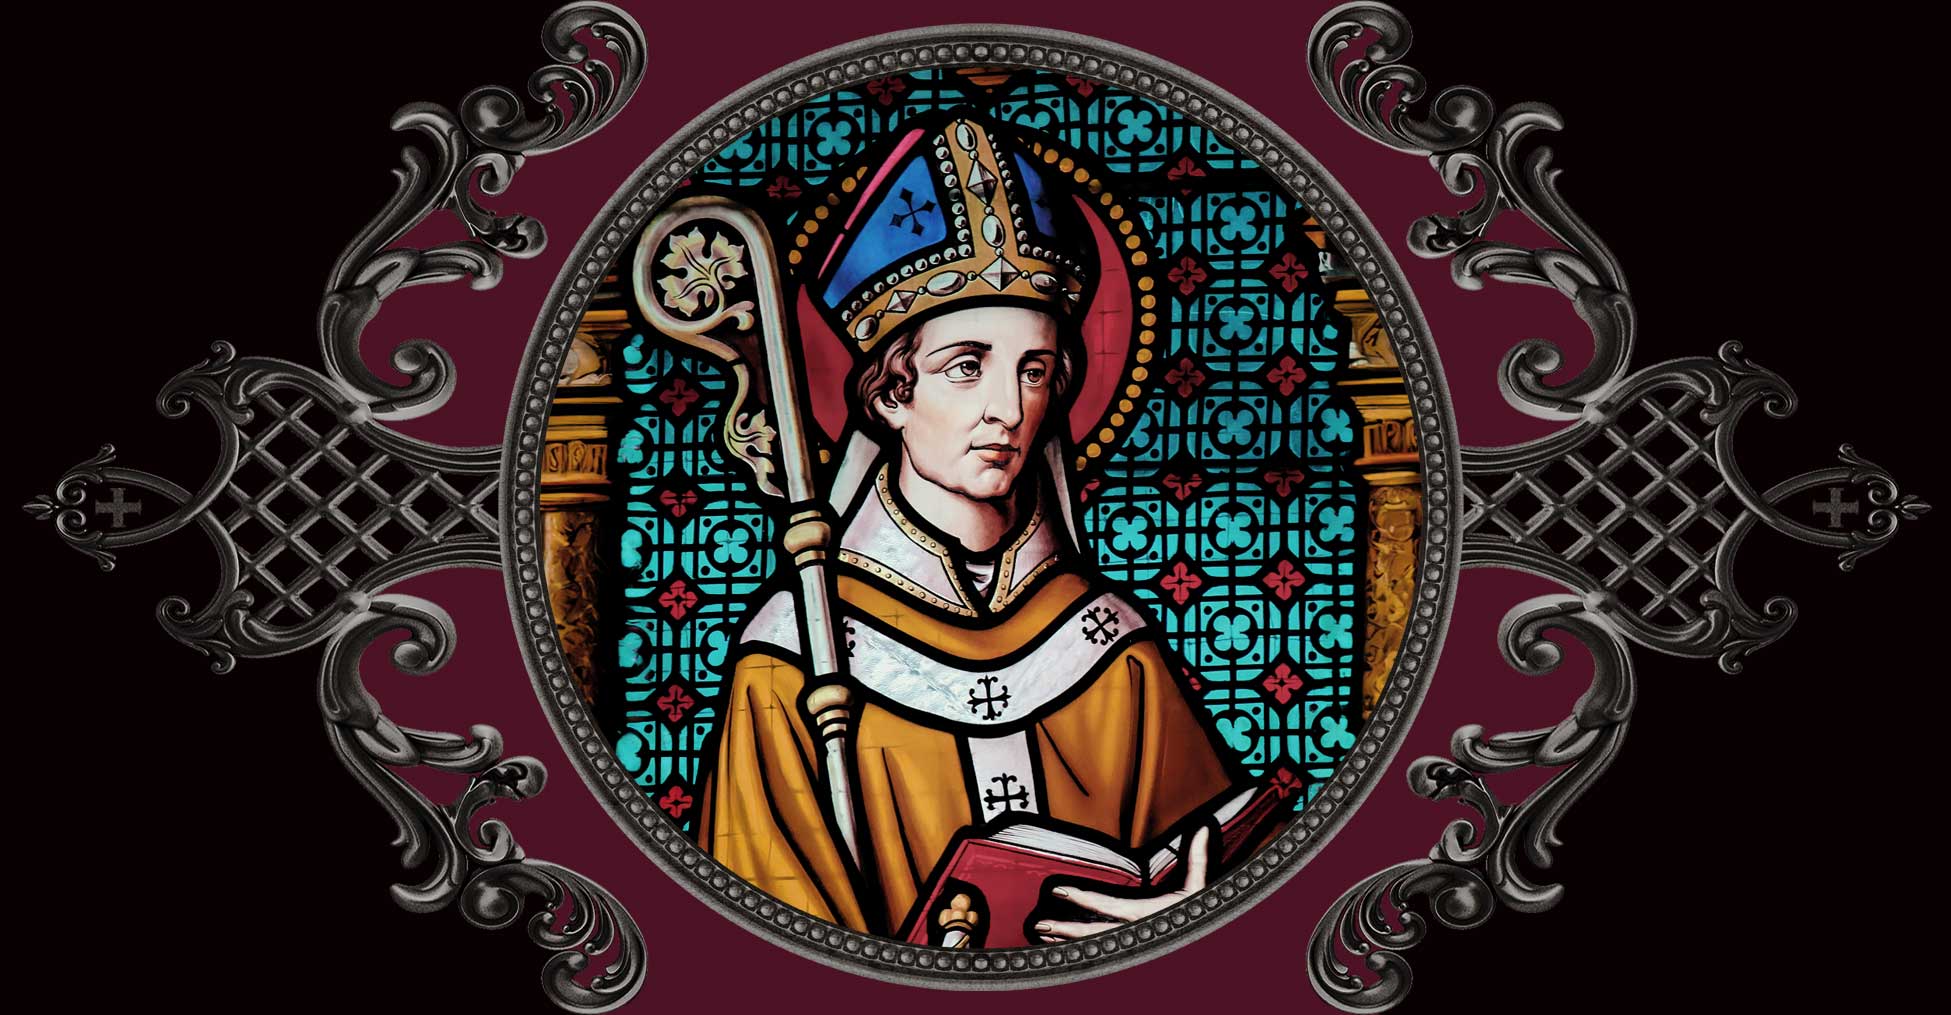 May 29 + Saint Maximinus of Trier - VENXARA®